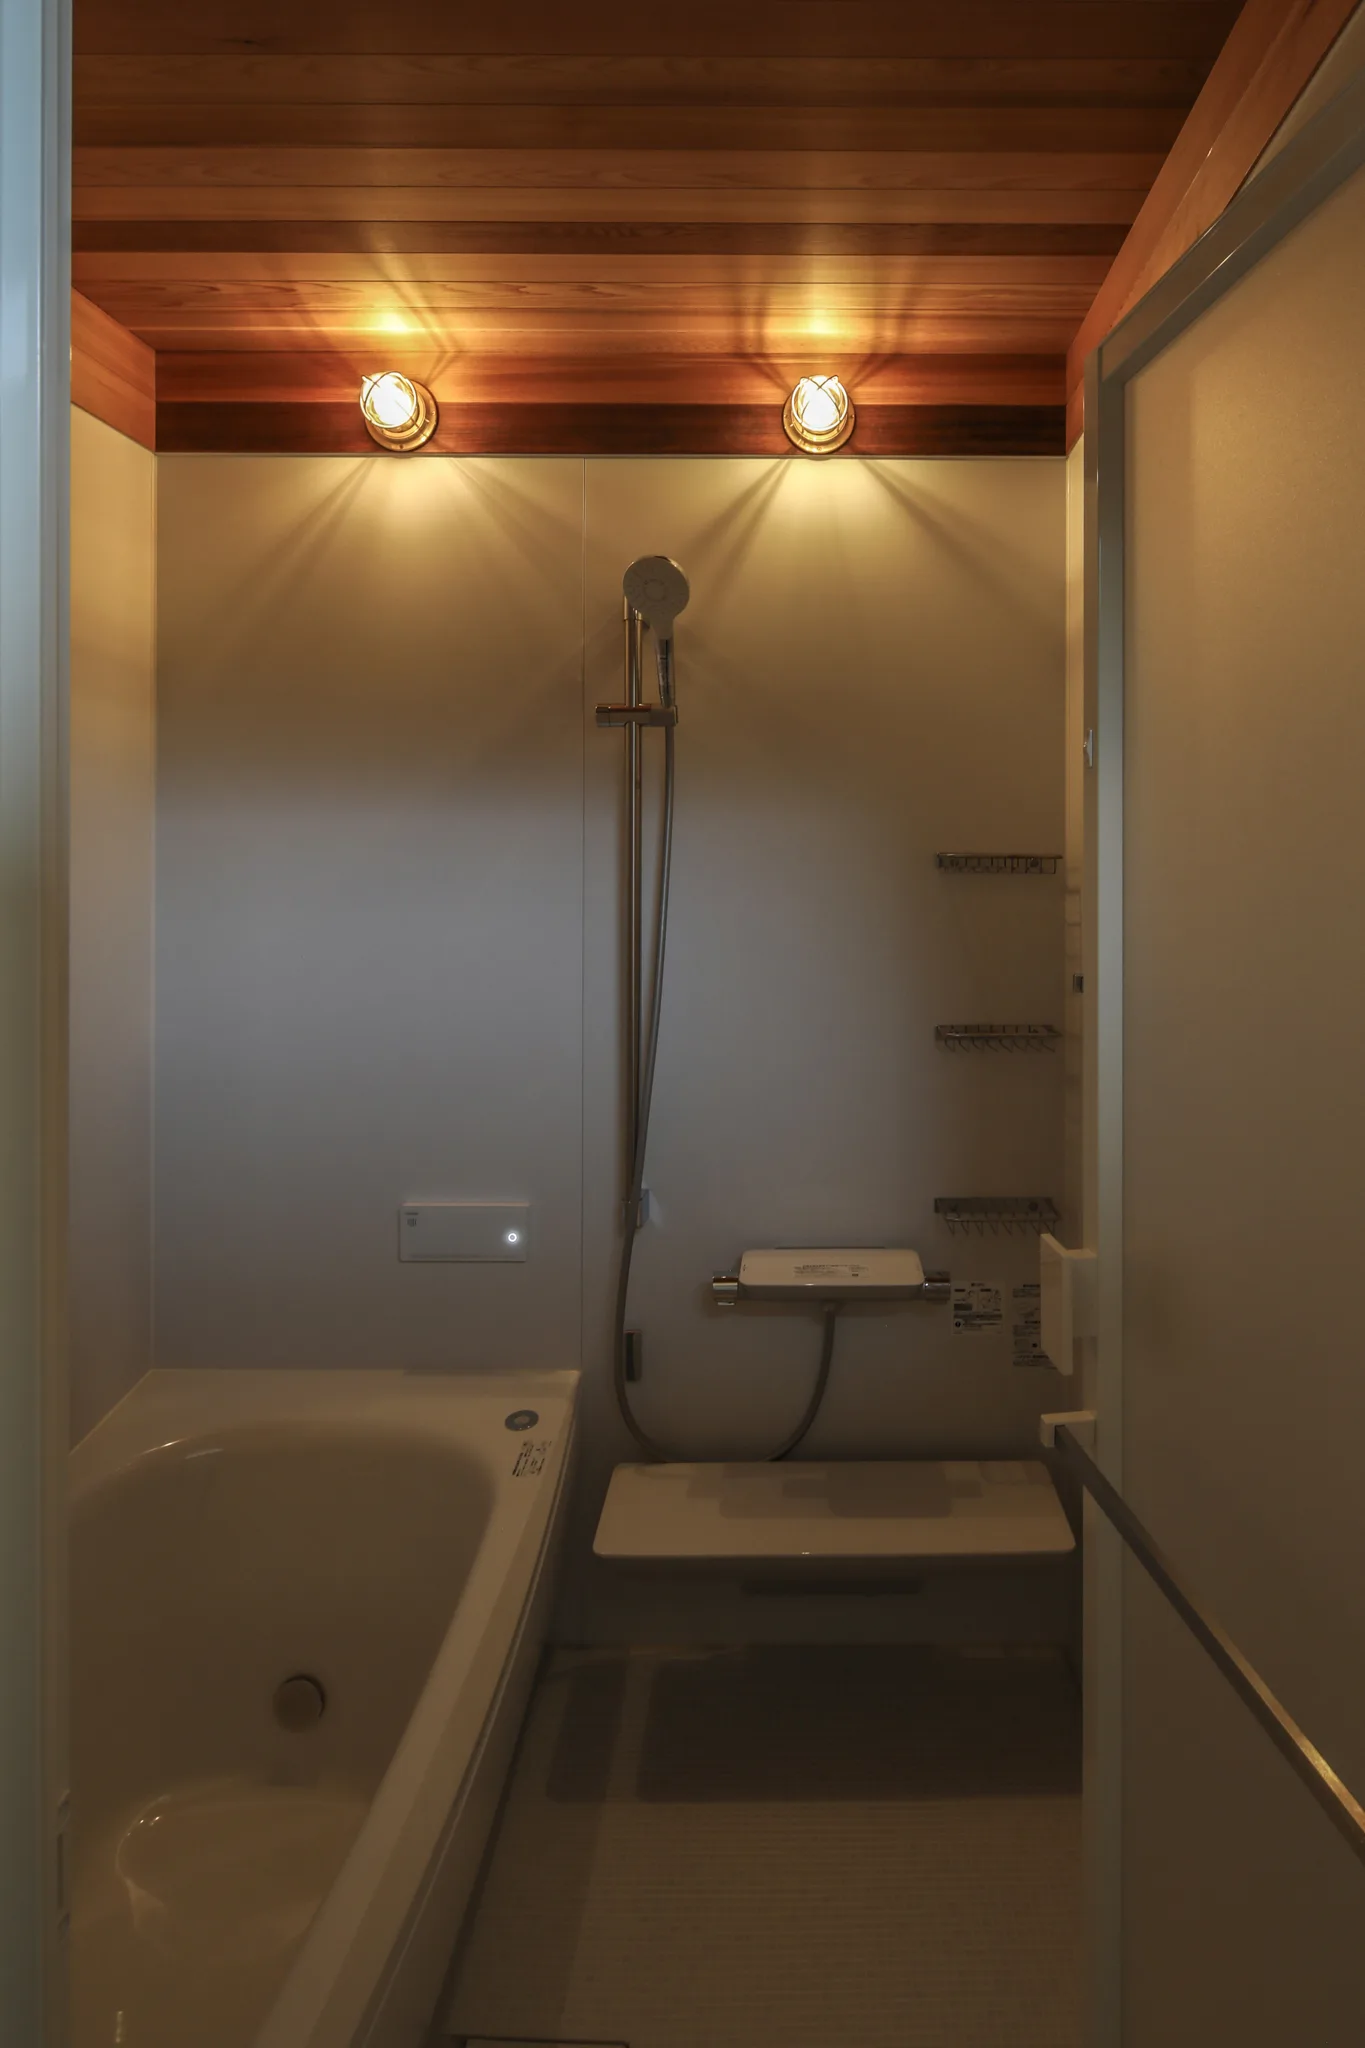 風呂の洗い場と浴槽。ユニットバスだが天井部分が造作でレッドシダーが貼られている。照明はマリンライトが2つ横に並んでついている。